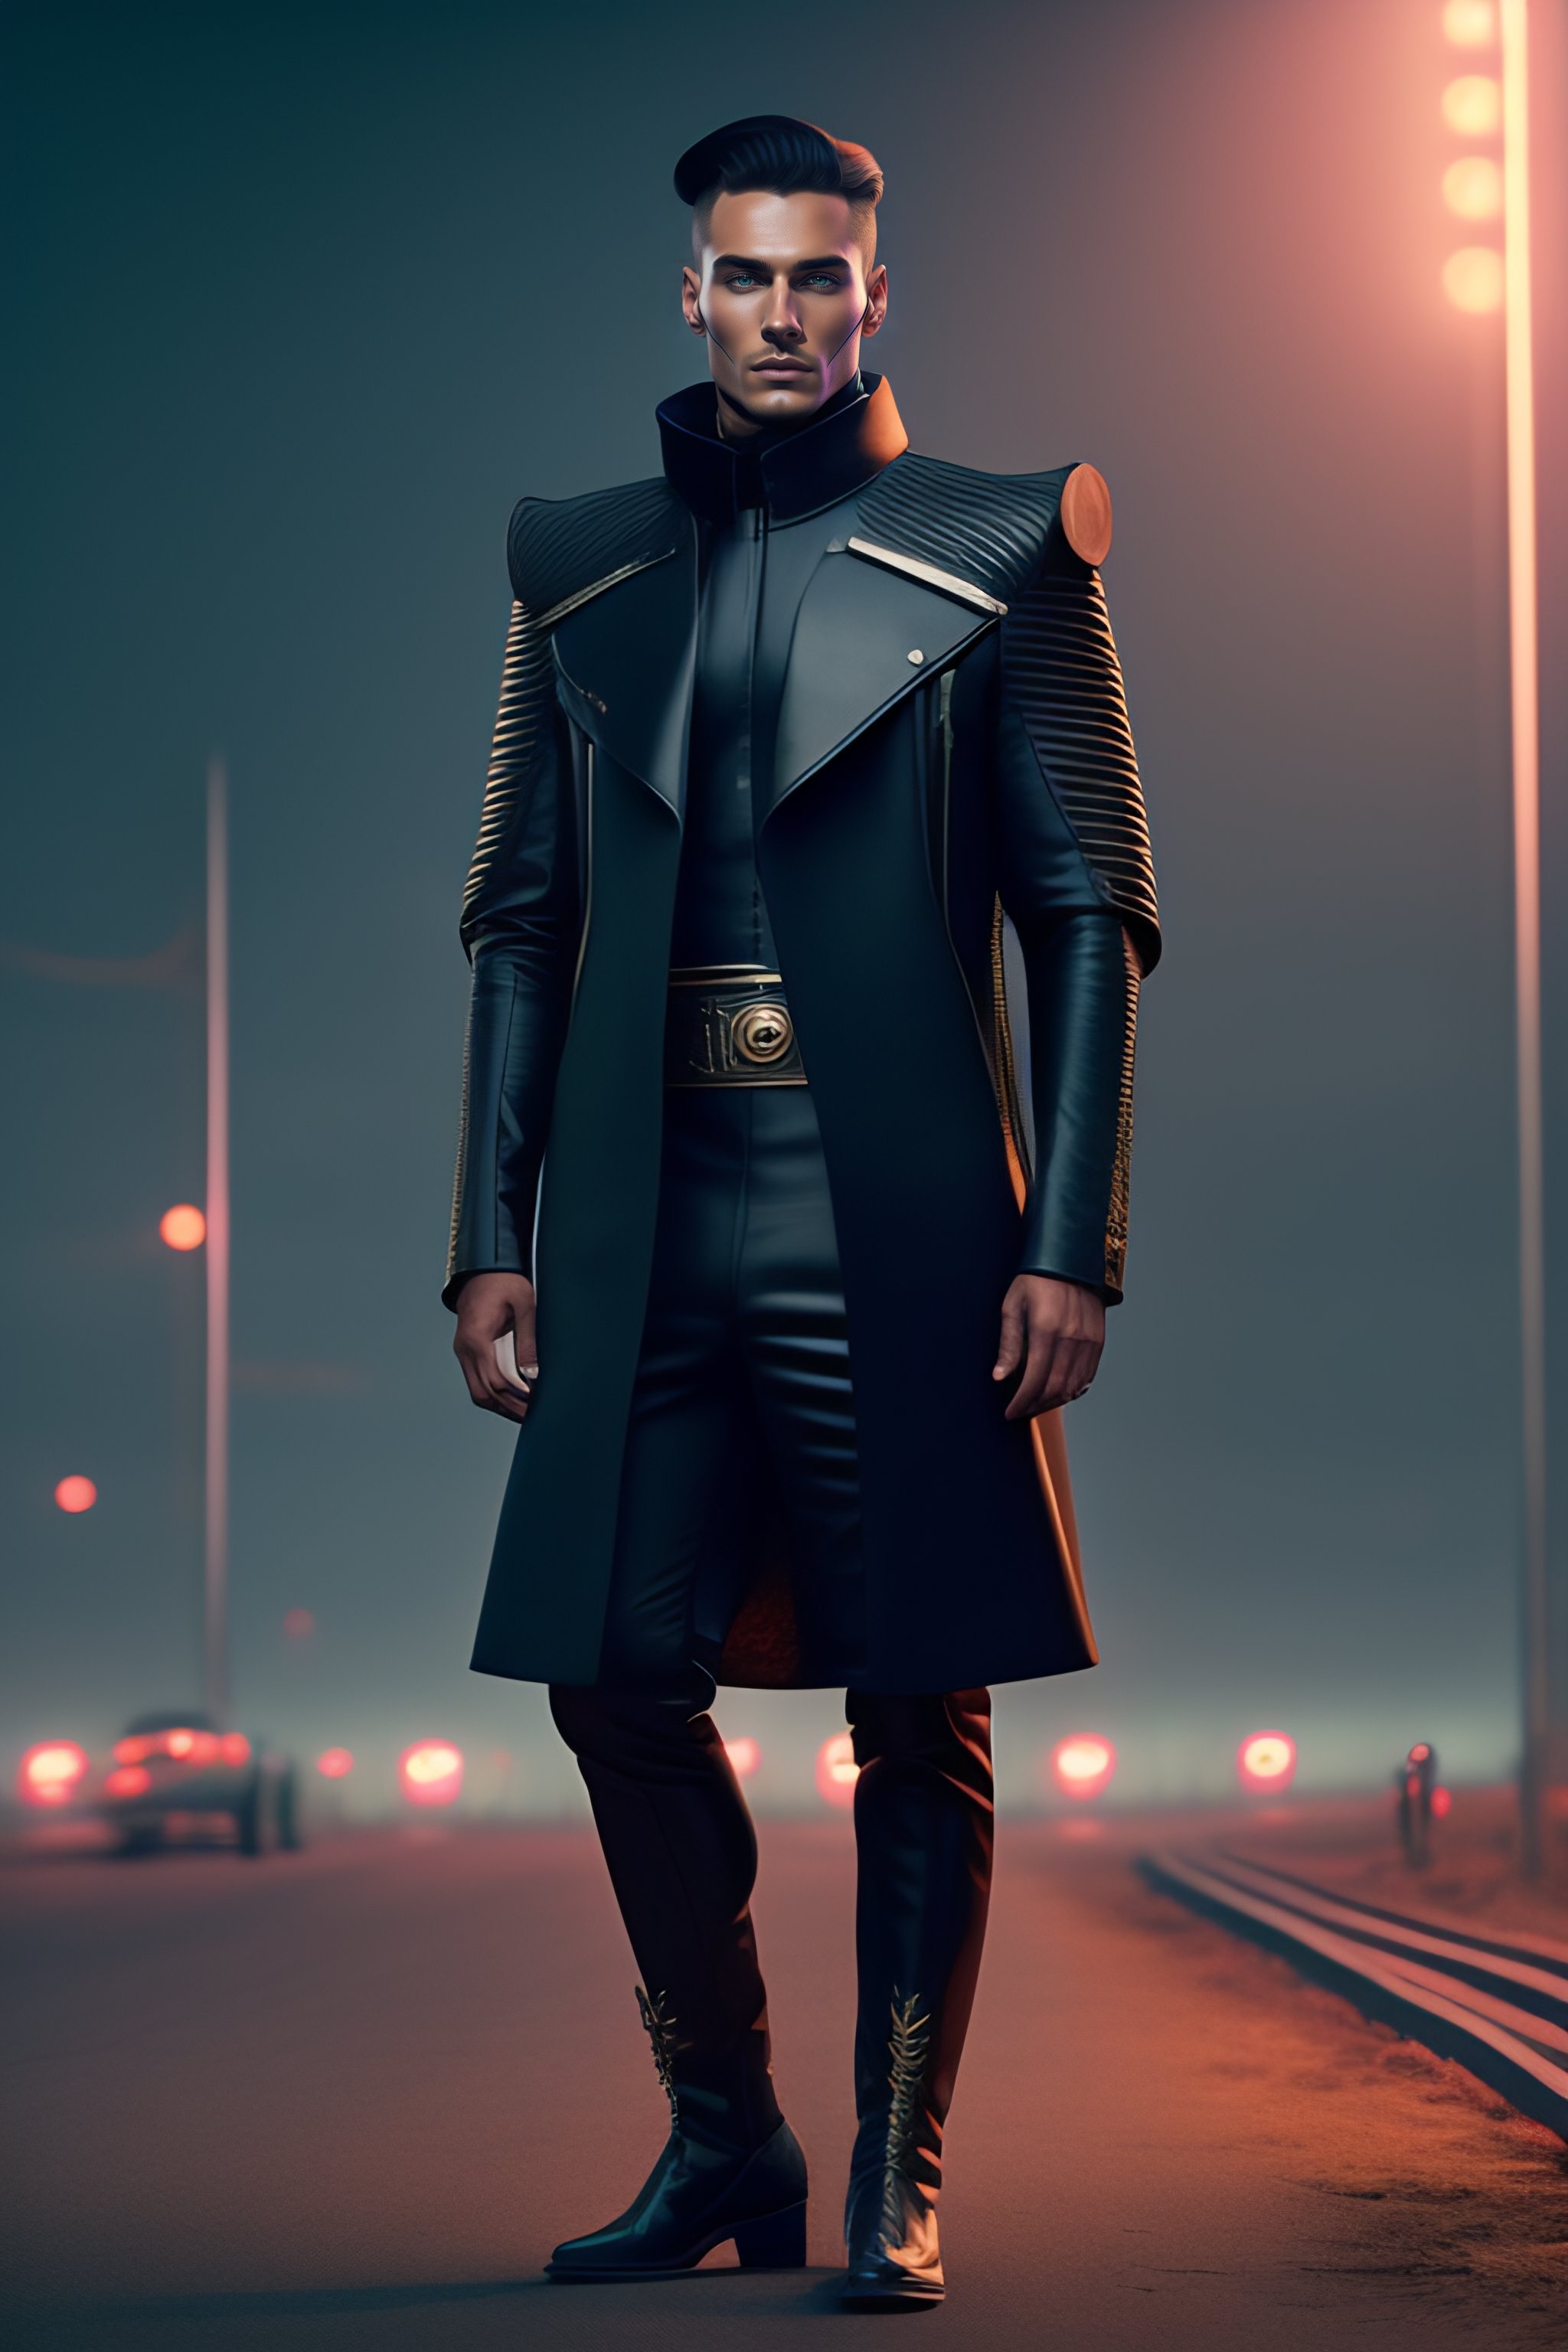 Lexica - Simon stalenhag style 1920s futuristic Futuristic Leather man ...